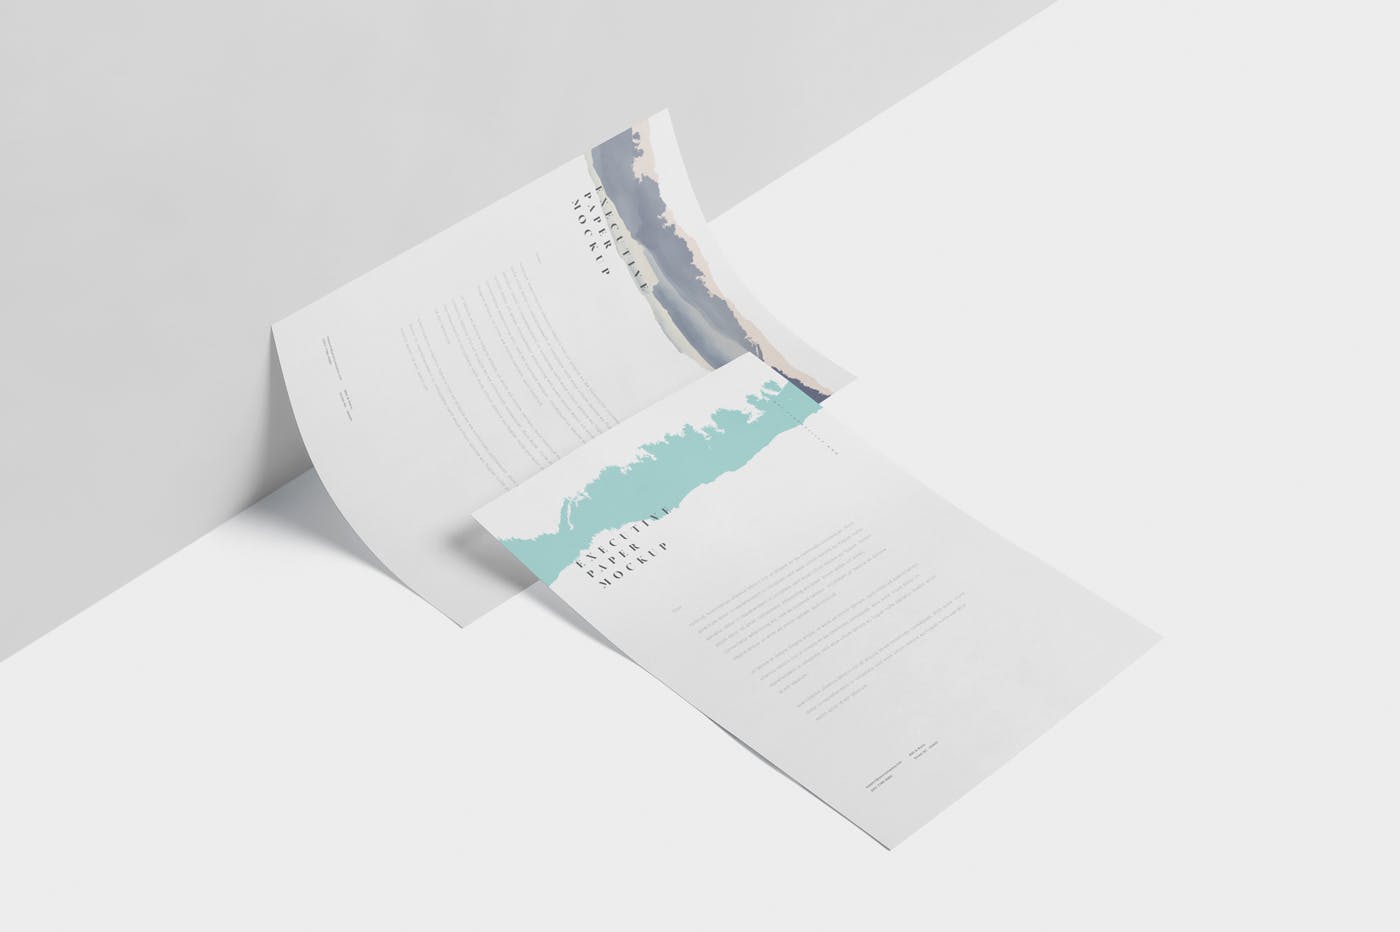 企业宣传单张设计效果图样机蚂蚁素材精选 Executive Paper Mockup – 7×10 Inch Size插图(2)